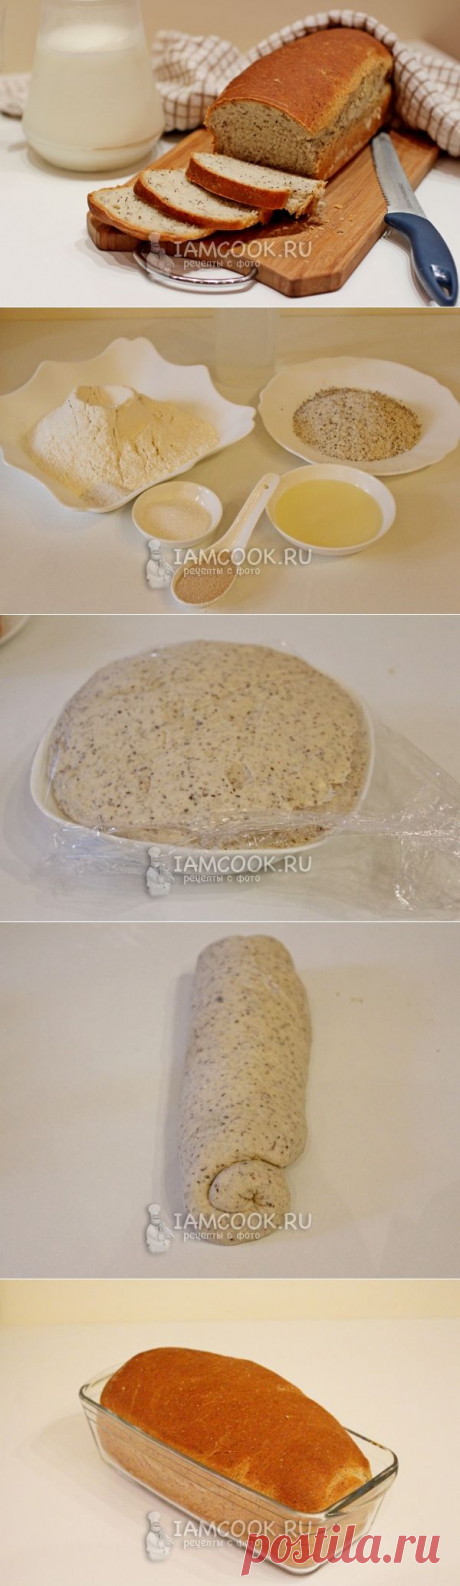 Ароматный домашний хлеб из гречневой муки - Вкусные рецепты